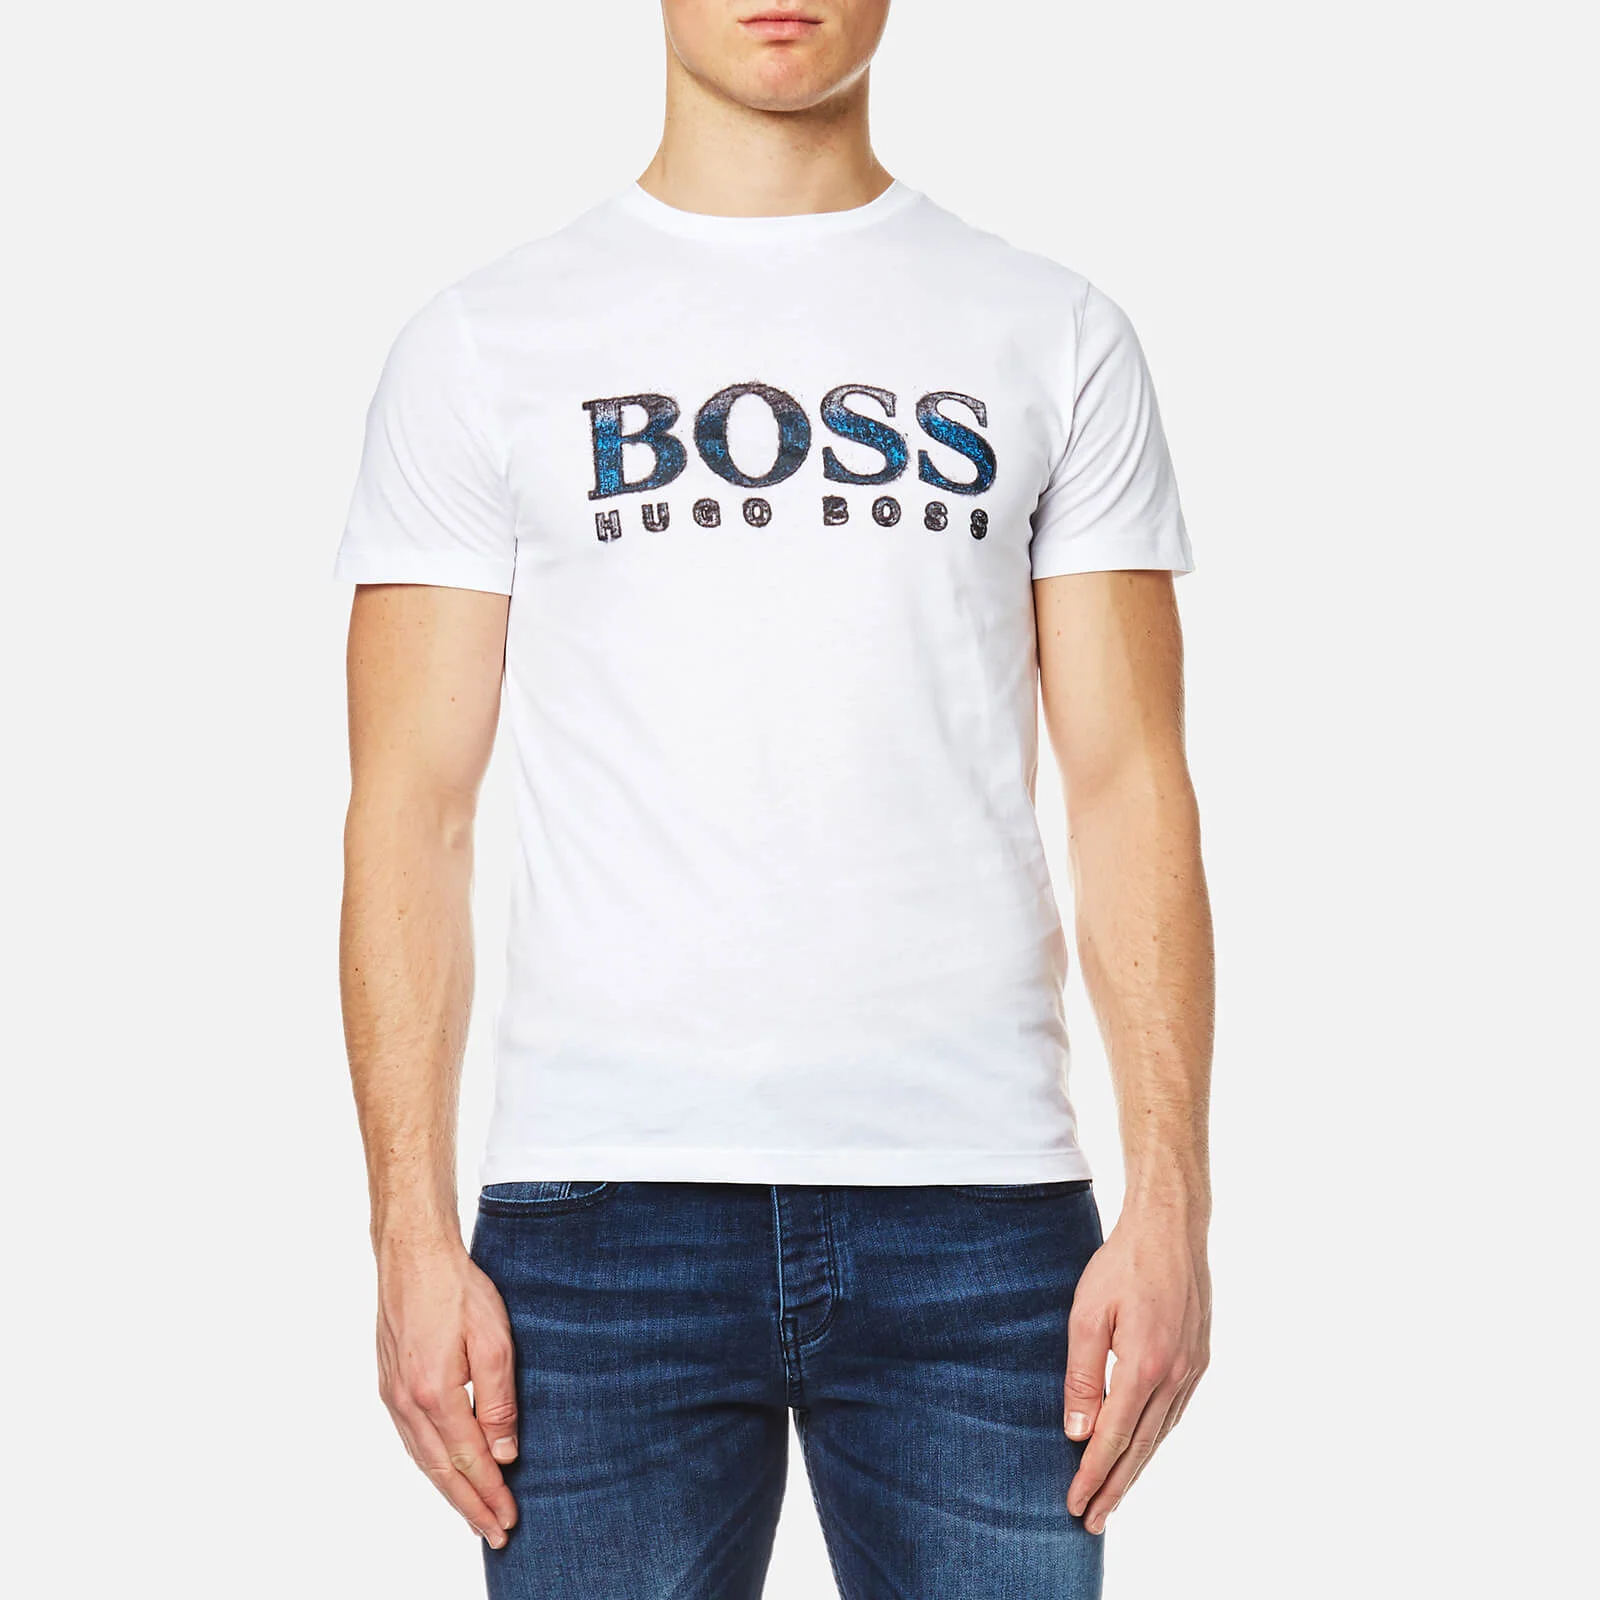 BOSS Orange Men's Turbulence 2 Logo T-Shirt - White Image 1